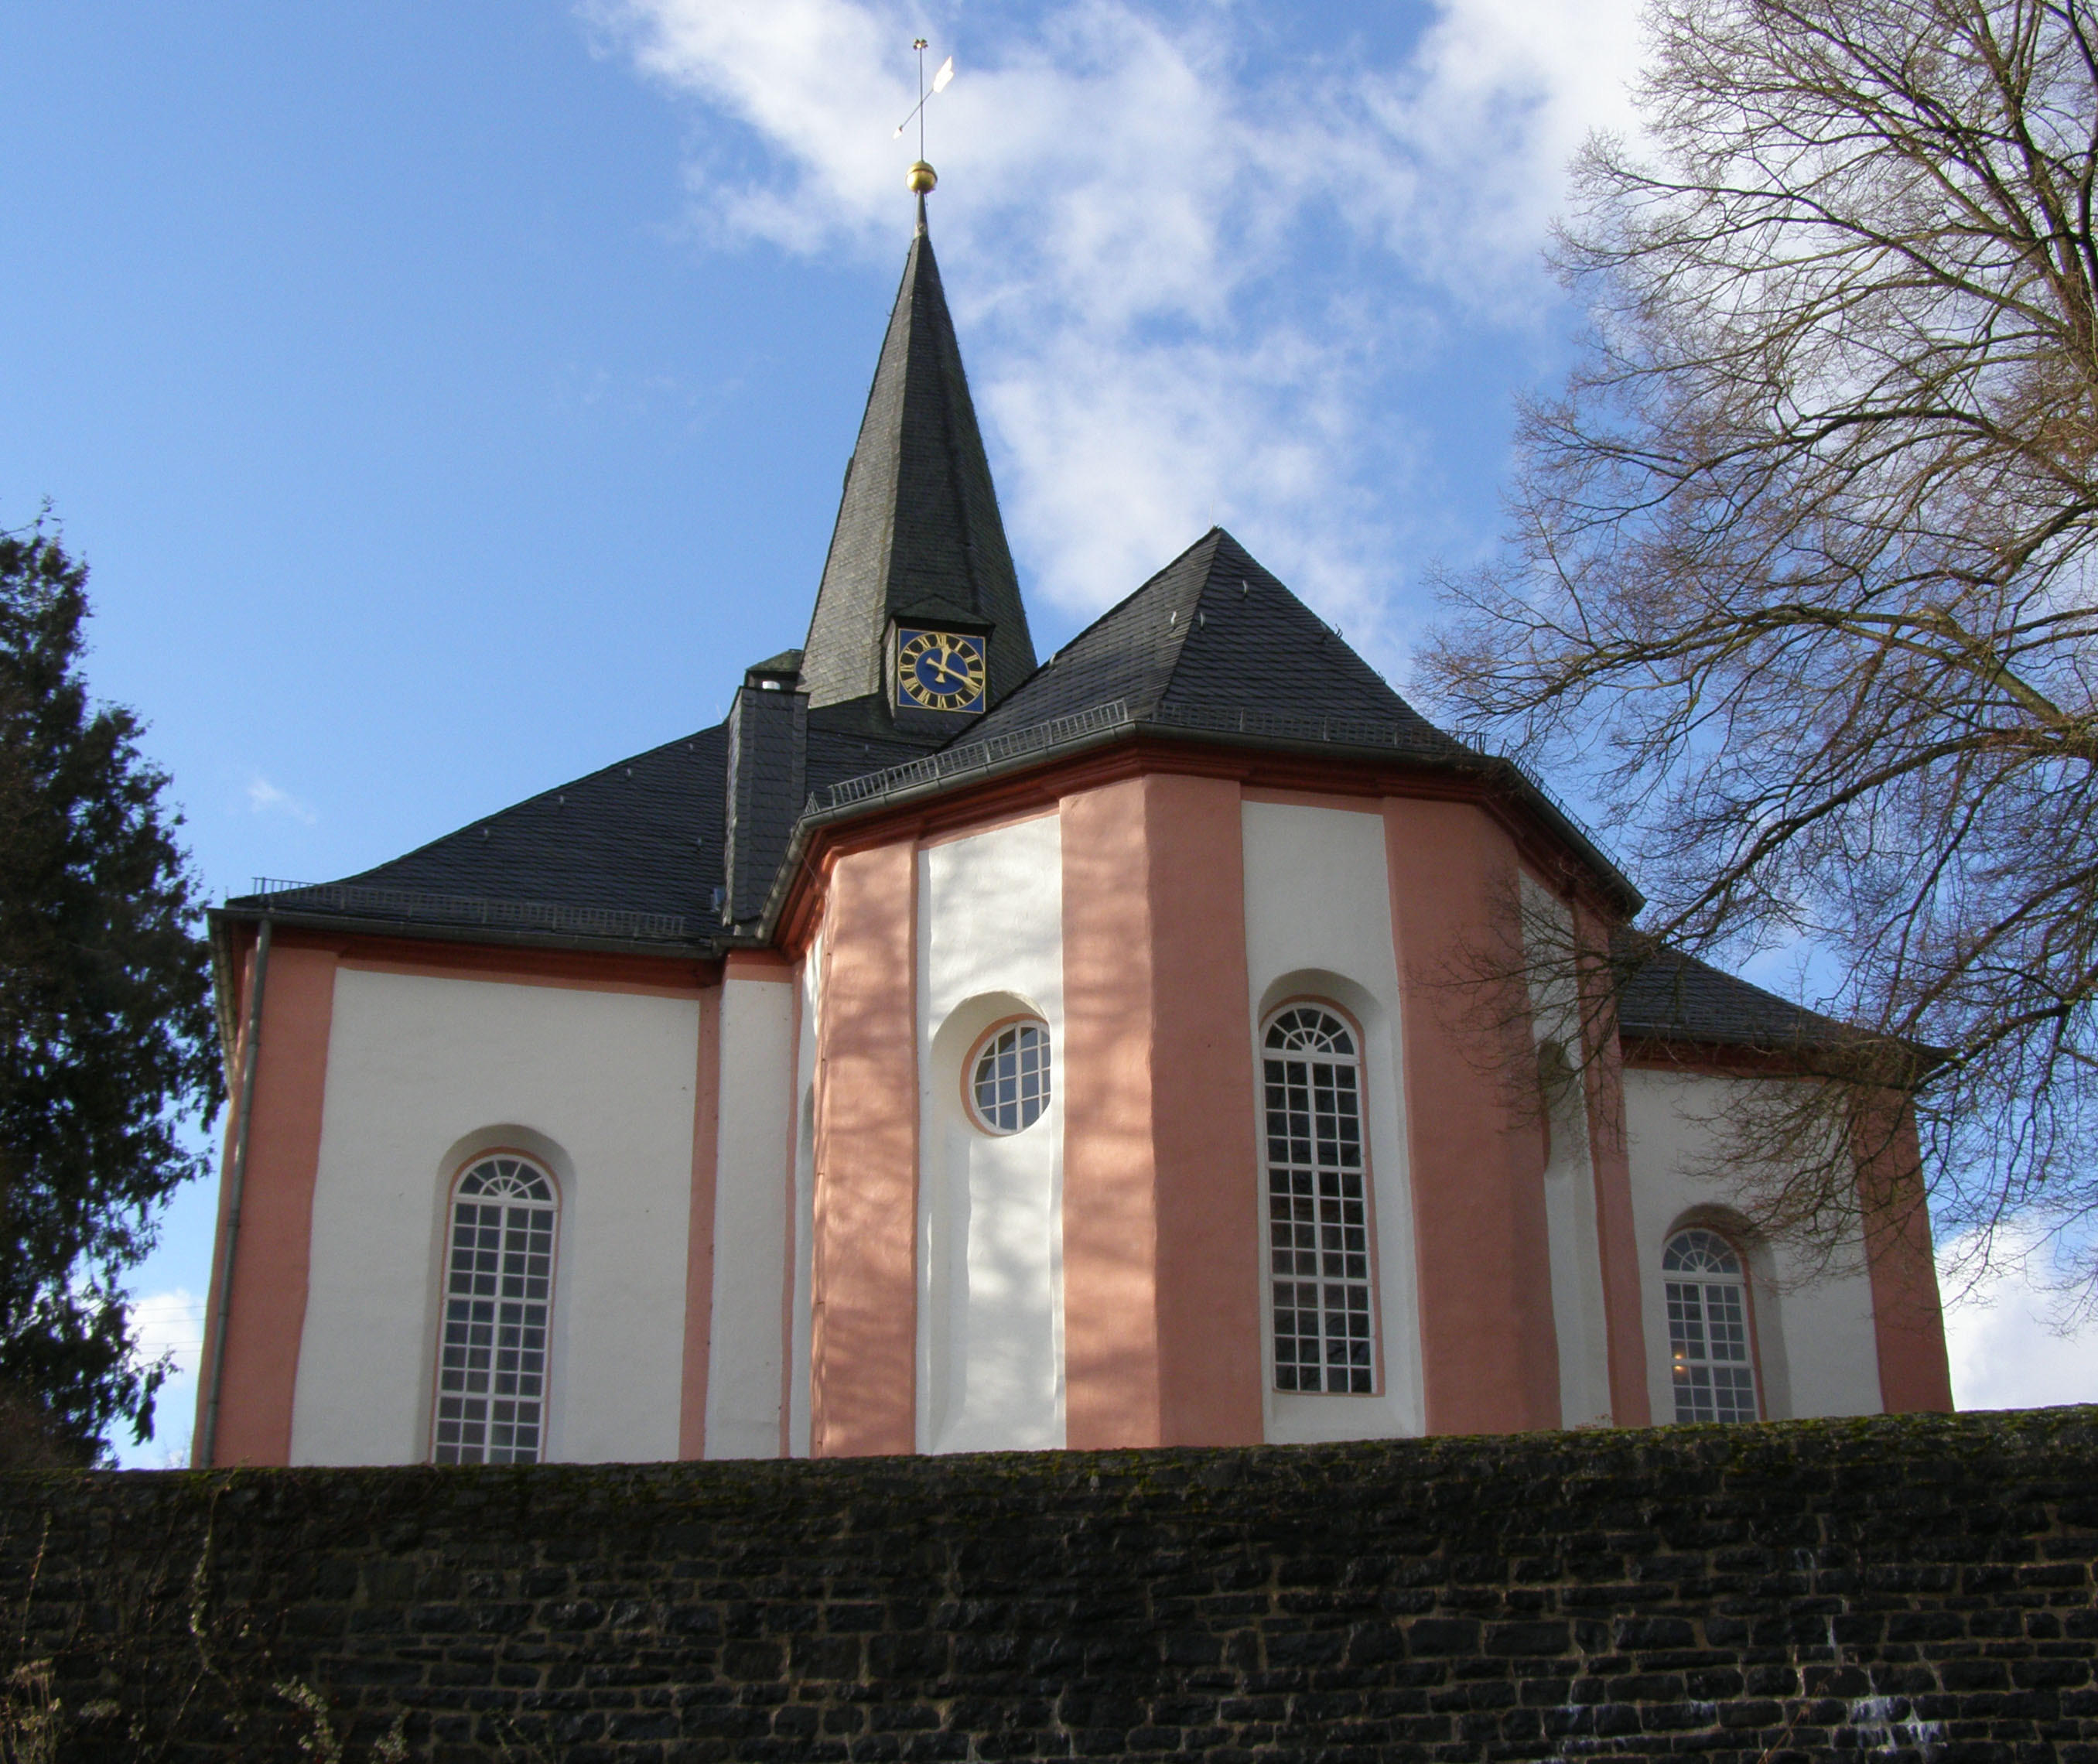 Die Johanneskirche ist eine protestantische Quersaalkirche, die ihre heutige Bauform im 18. Jahrhundert bekommen hat. Die Ursprünge des Baukörpers gehen in das 12. Jahrhundert zurück, wovon heute noch der Turm mit romanischen Schallöffnungen und der Chor 